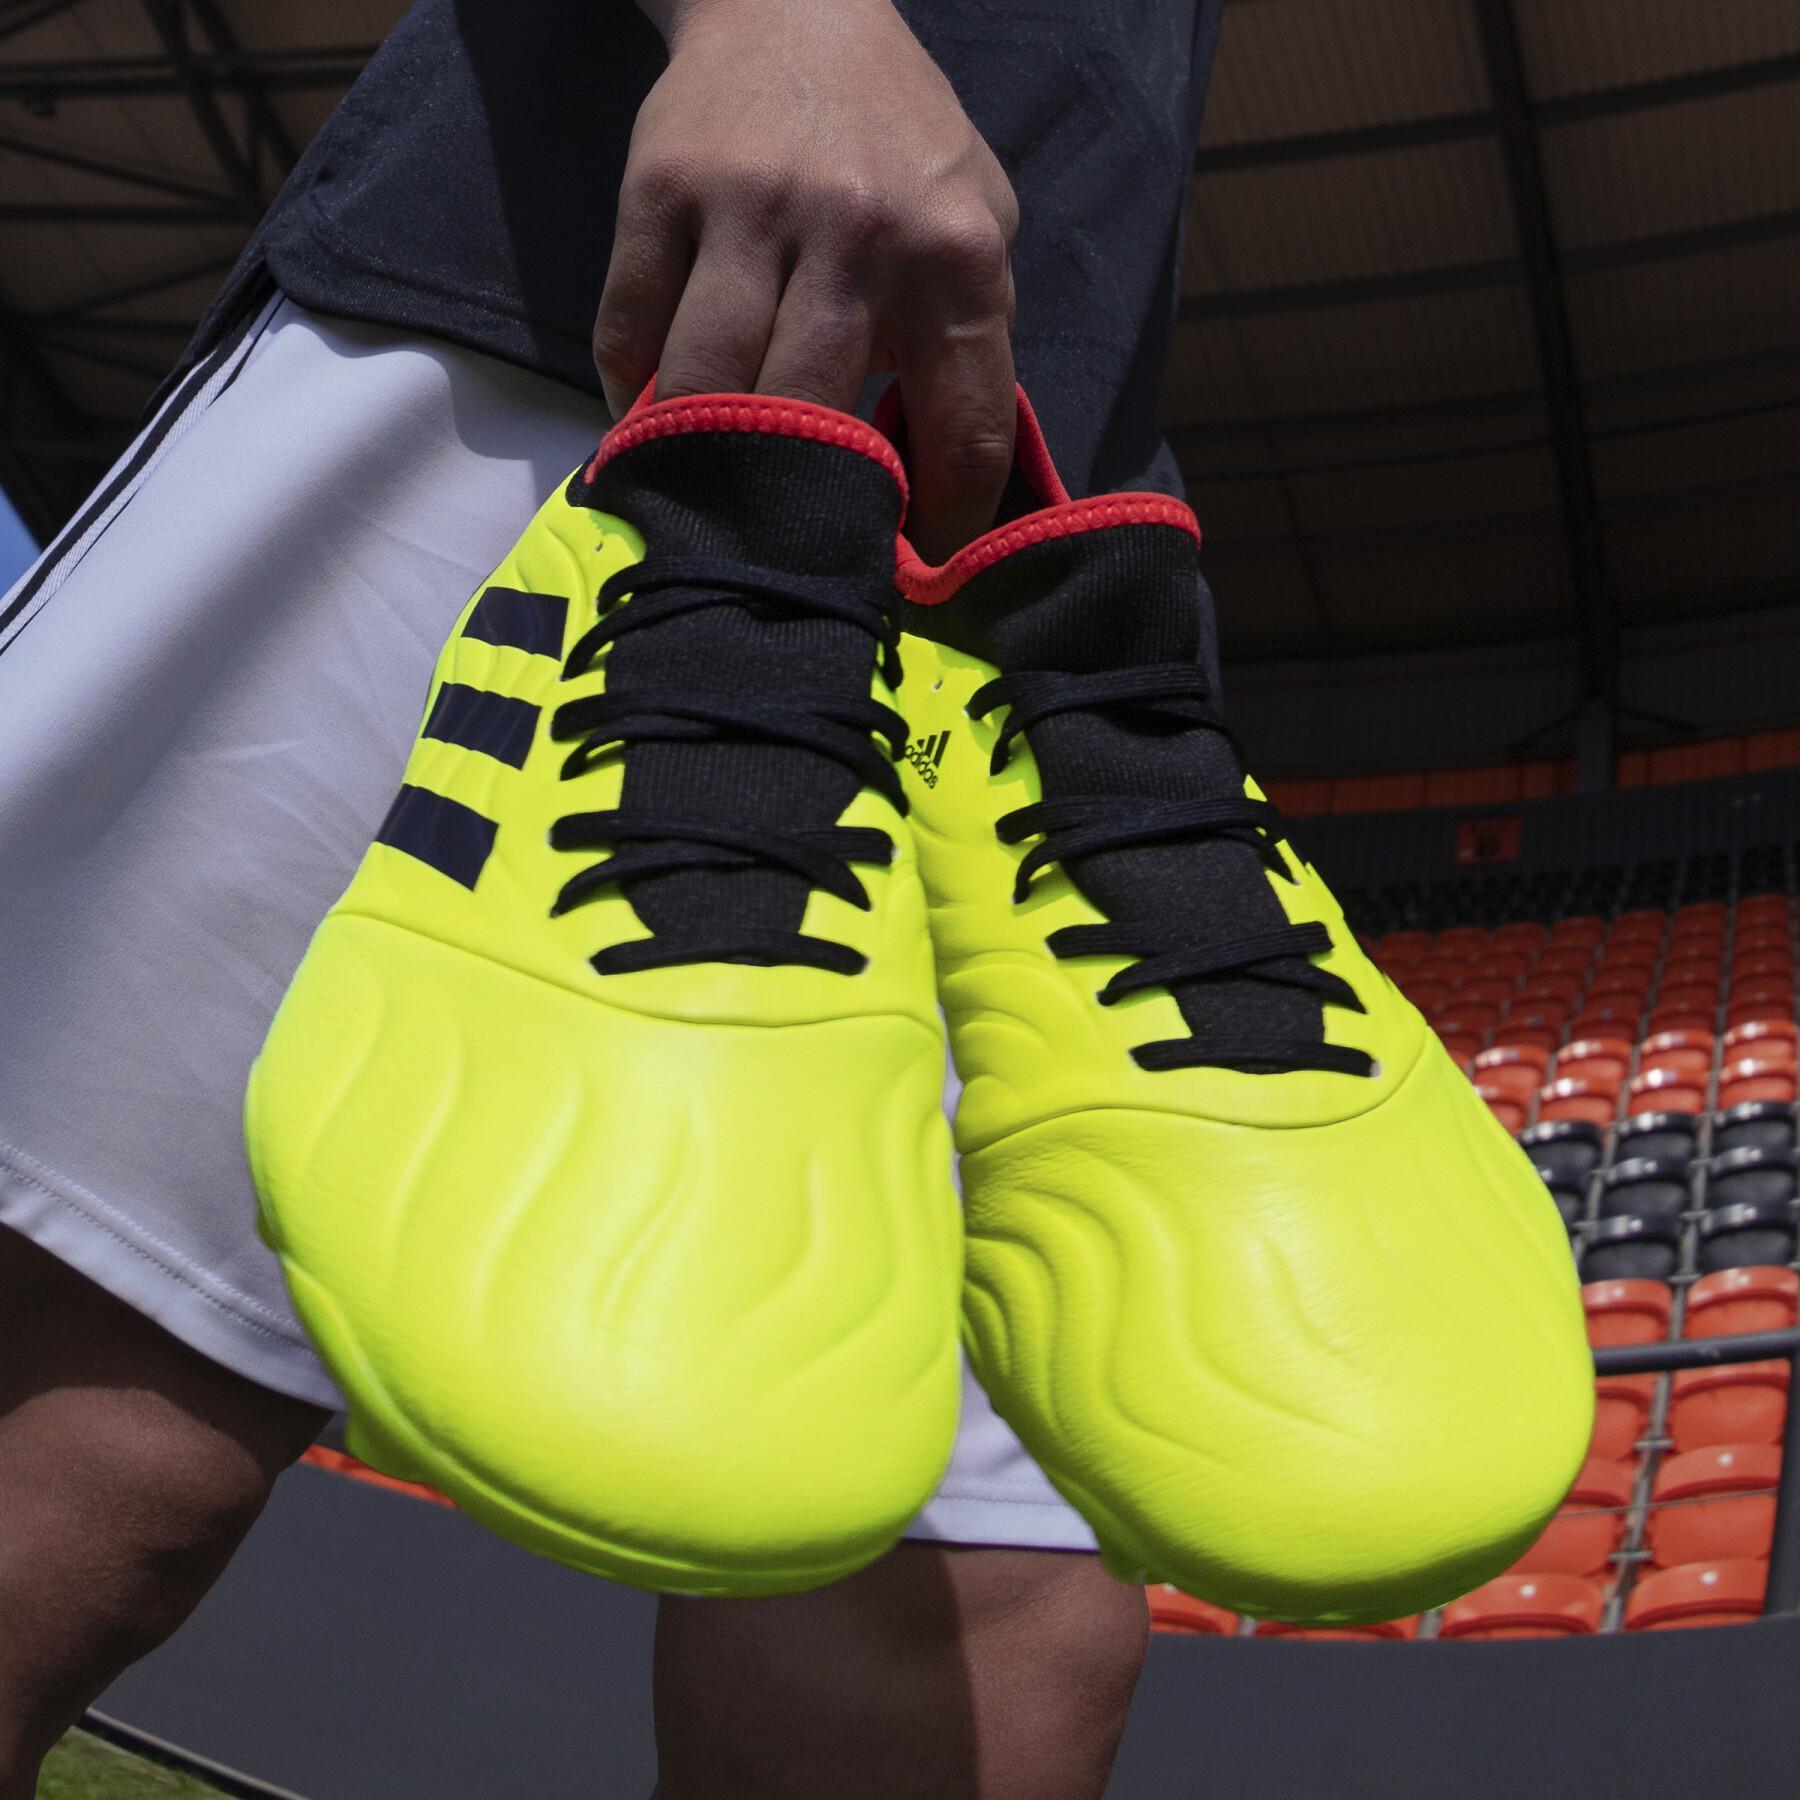 Chaussures de football adidas Copa Sense.3 FG - Game Data Pack